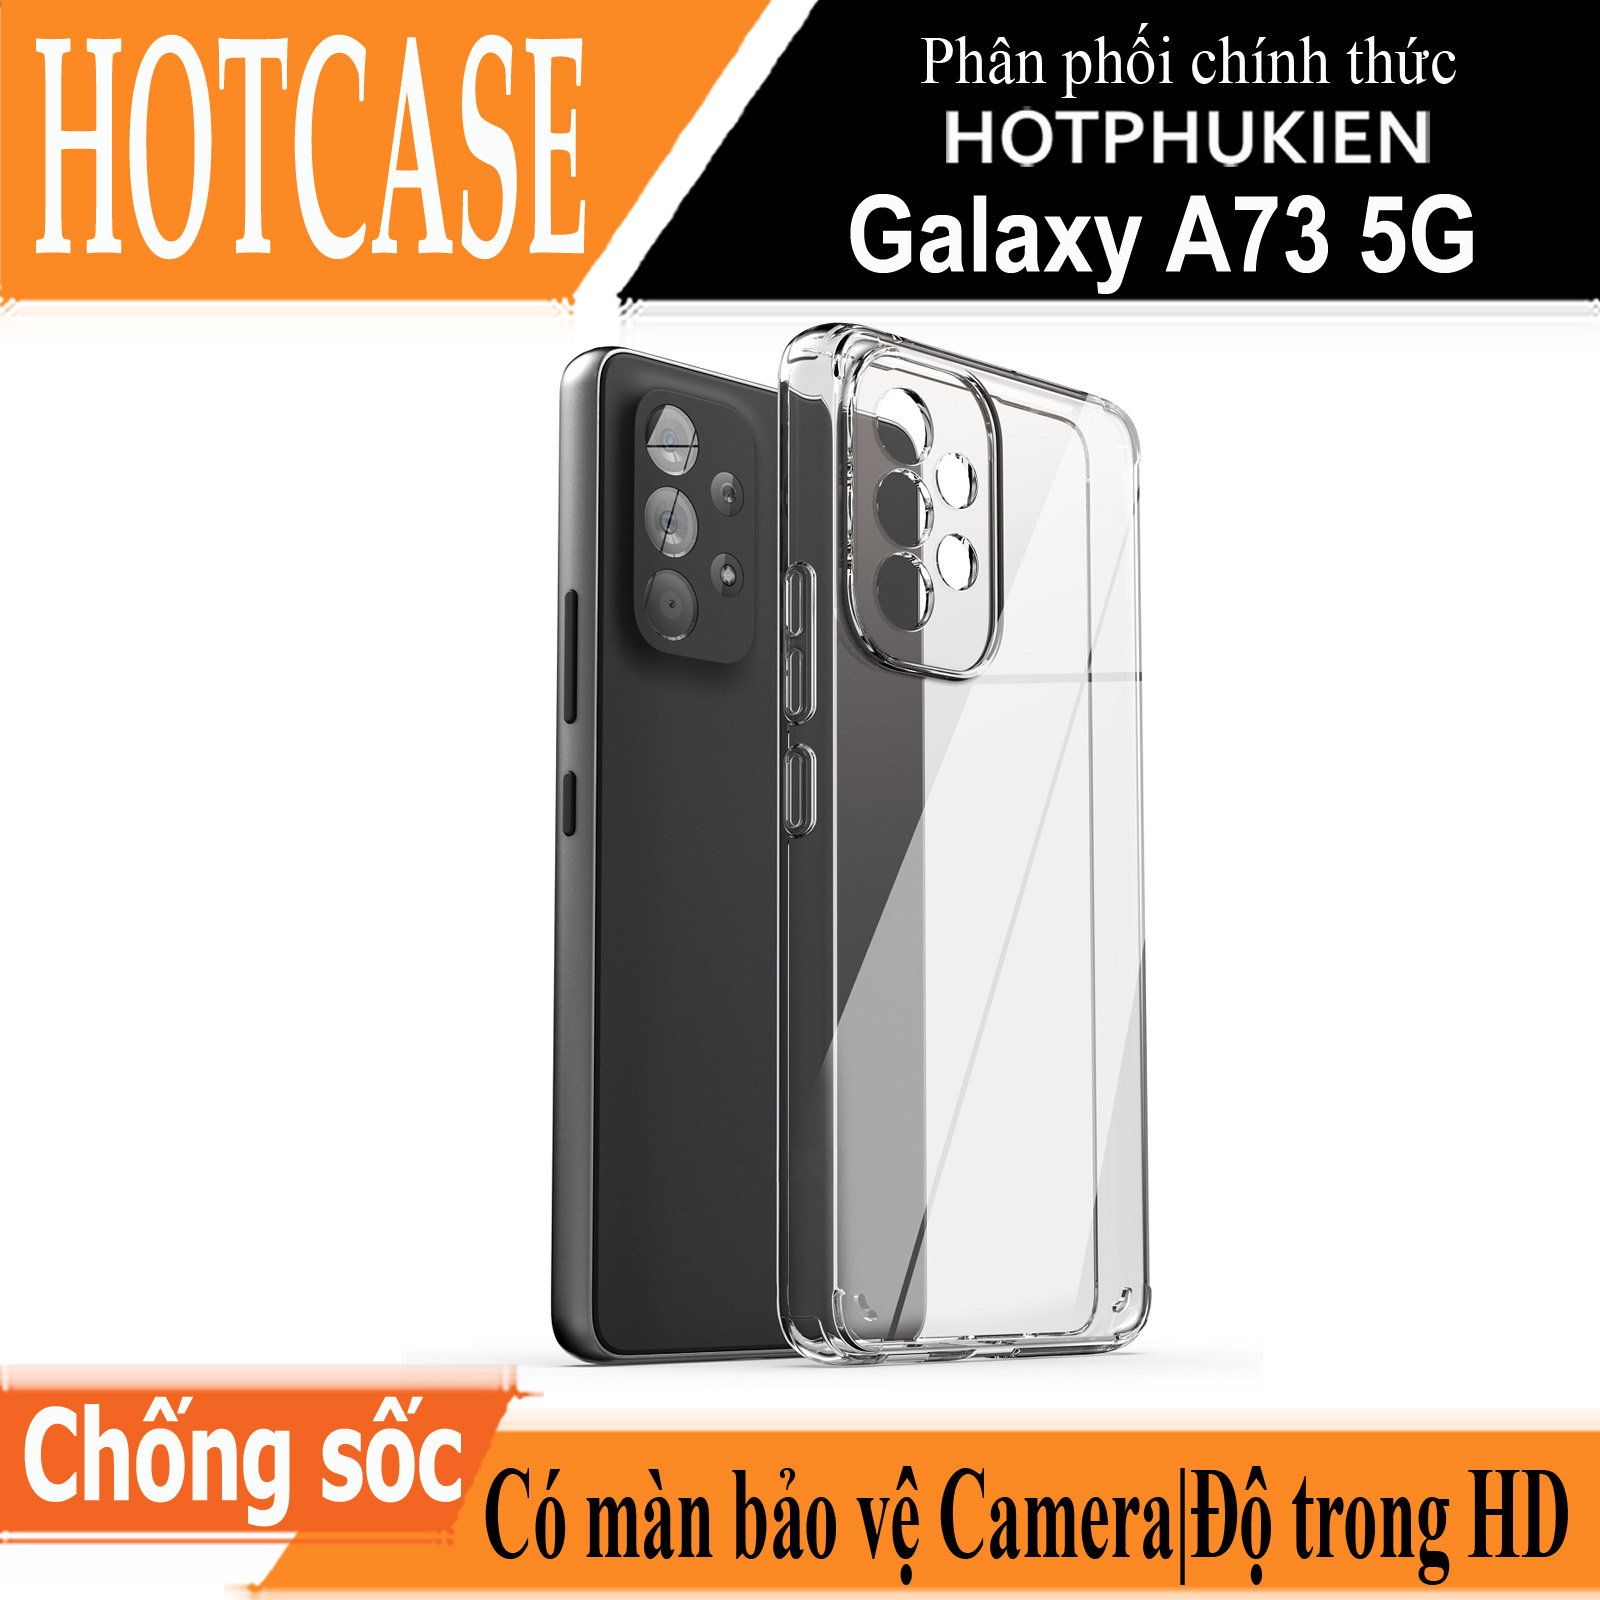 Ốp lưng silicon chống sốc cho Samsung Galaxy A73 5G hiệu HOTCASE - siêu mỏng 0.6mm, độ trong tuyệt đối, chống trầy xước, chống ố vàng, tản nhiệt tốt